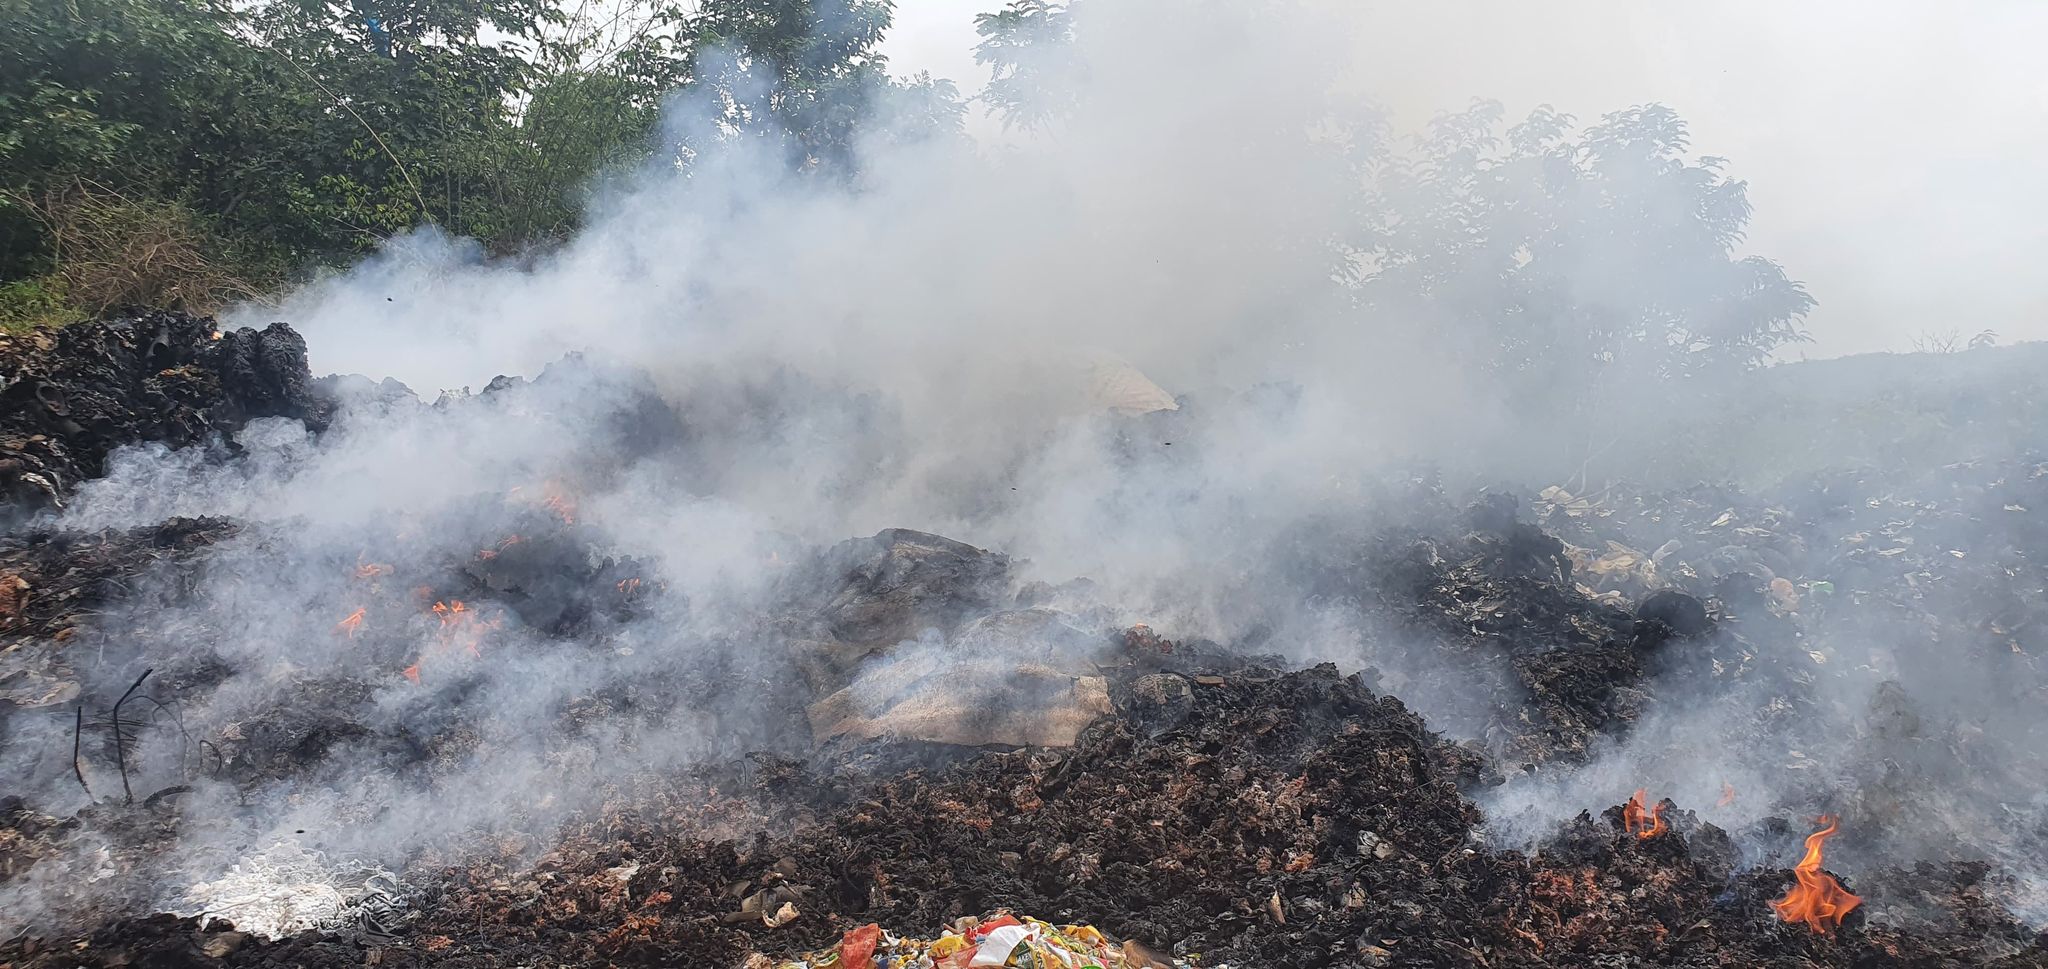 Lửa bốc cháy nghi ngút trên bãi xử lý rác thải được huyện Đắk R'lấp giao cho Công ty TNHH xây dựng Nghĩa Hà xử lý.